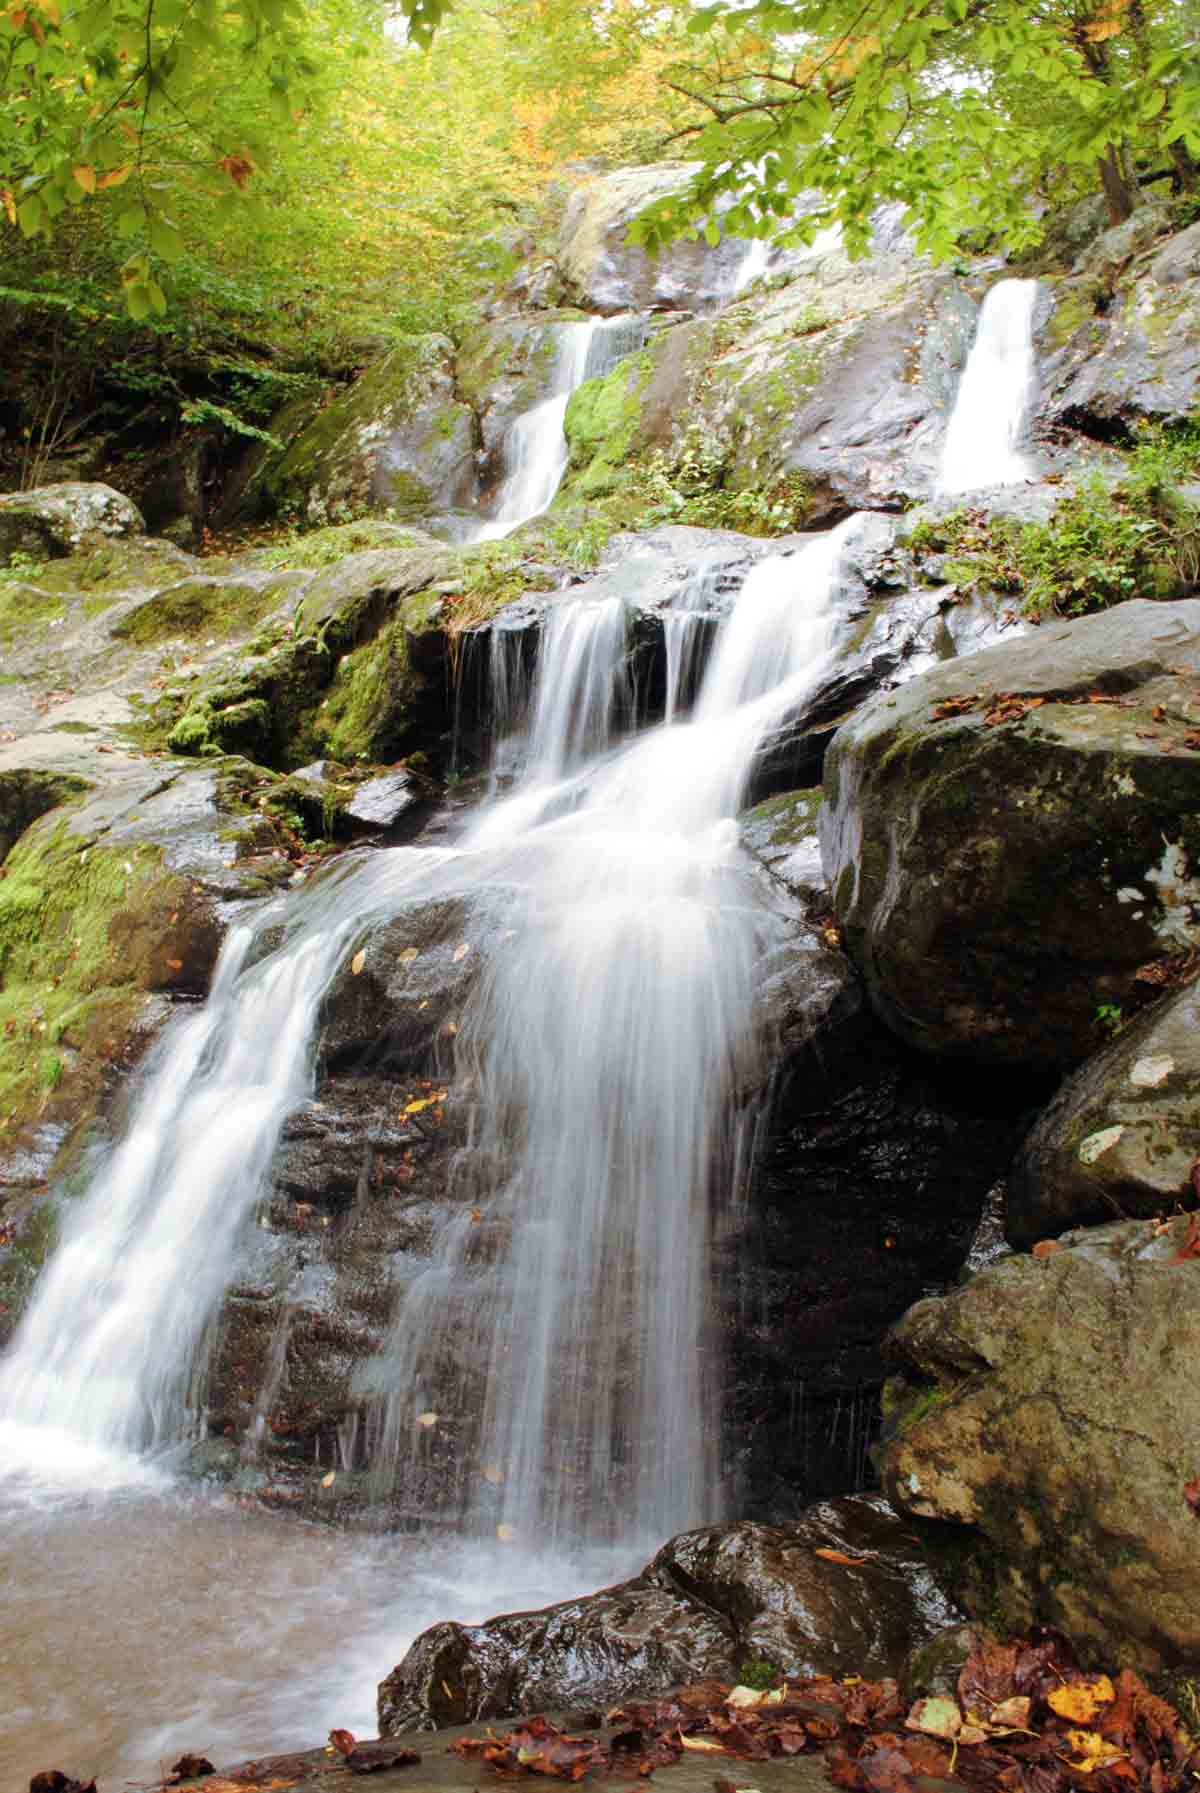 The Falls at Rock Hollow hiking trail Shenandoah National Park